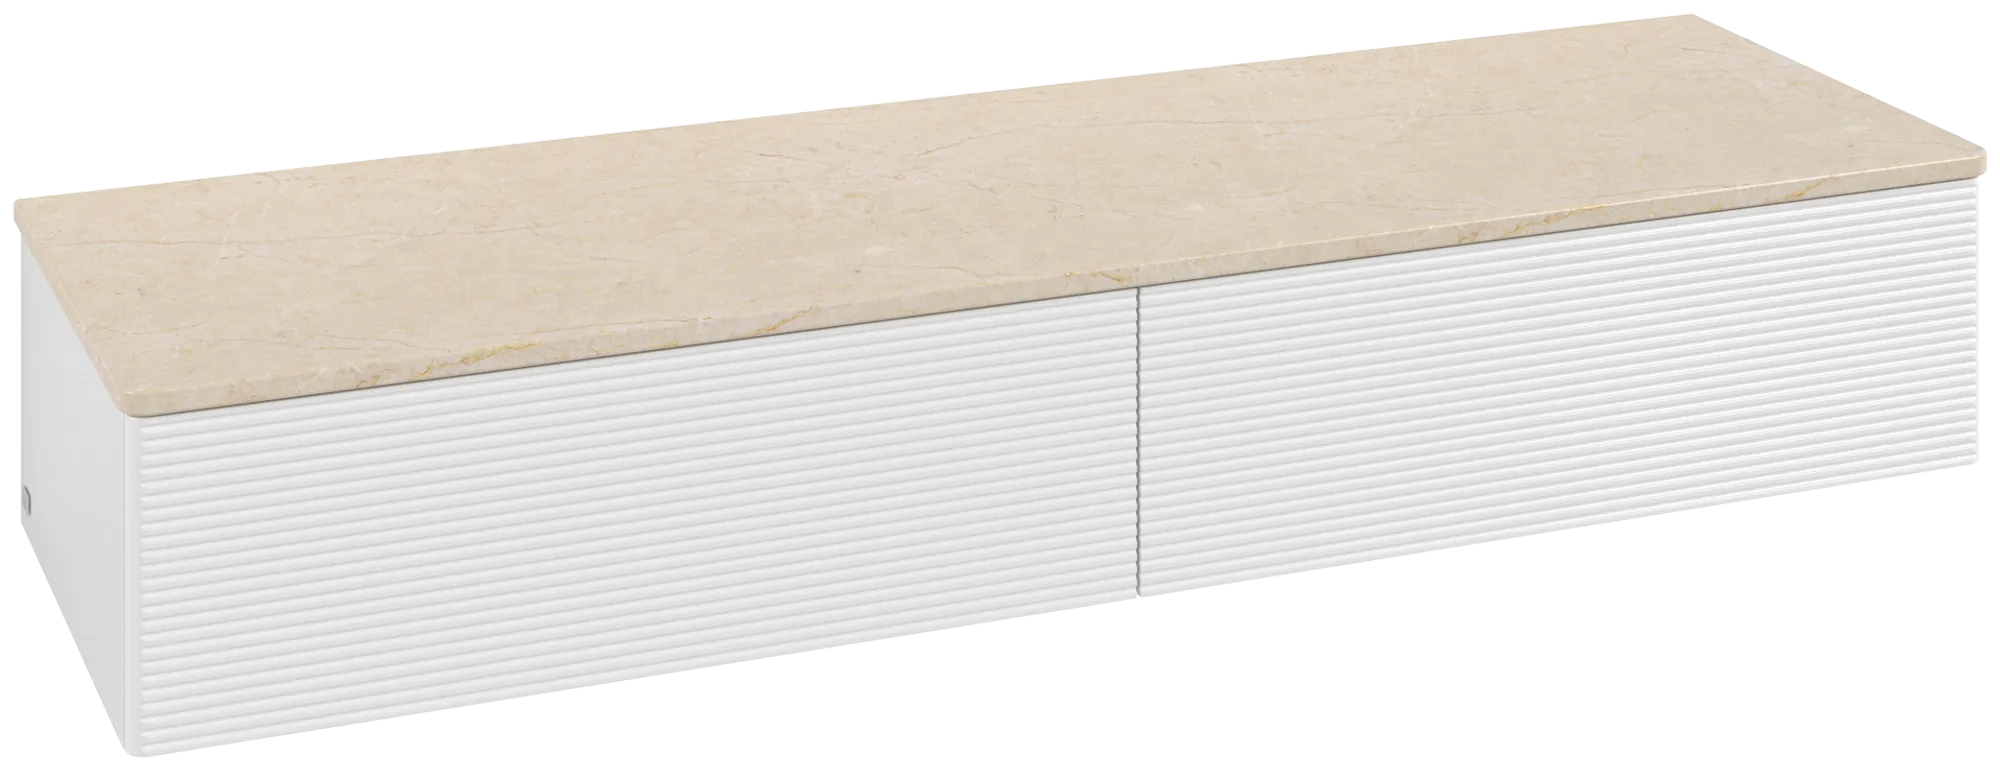 Bild von VILLEROY BOCH Antao Sideboard, 2 Auszüge, 1600 x 268 x 500 mm, Front mit Struktur, Glossy White Lacquer / Botticino #K42103GF